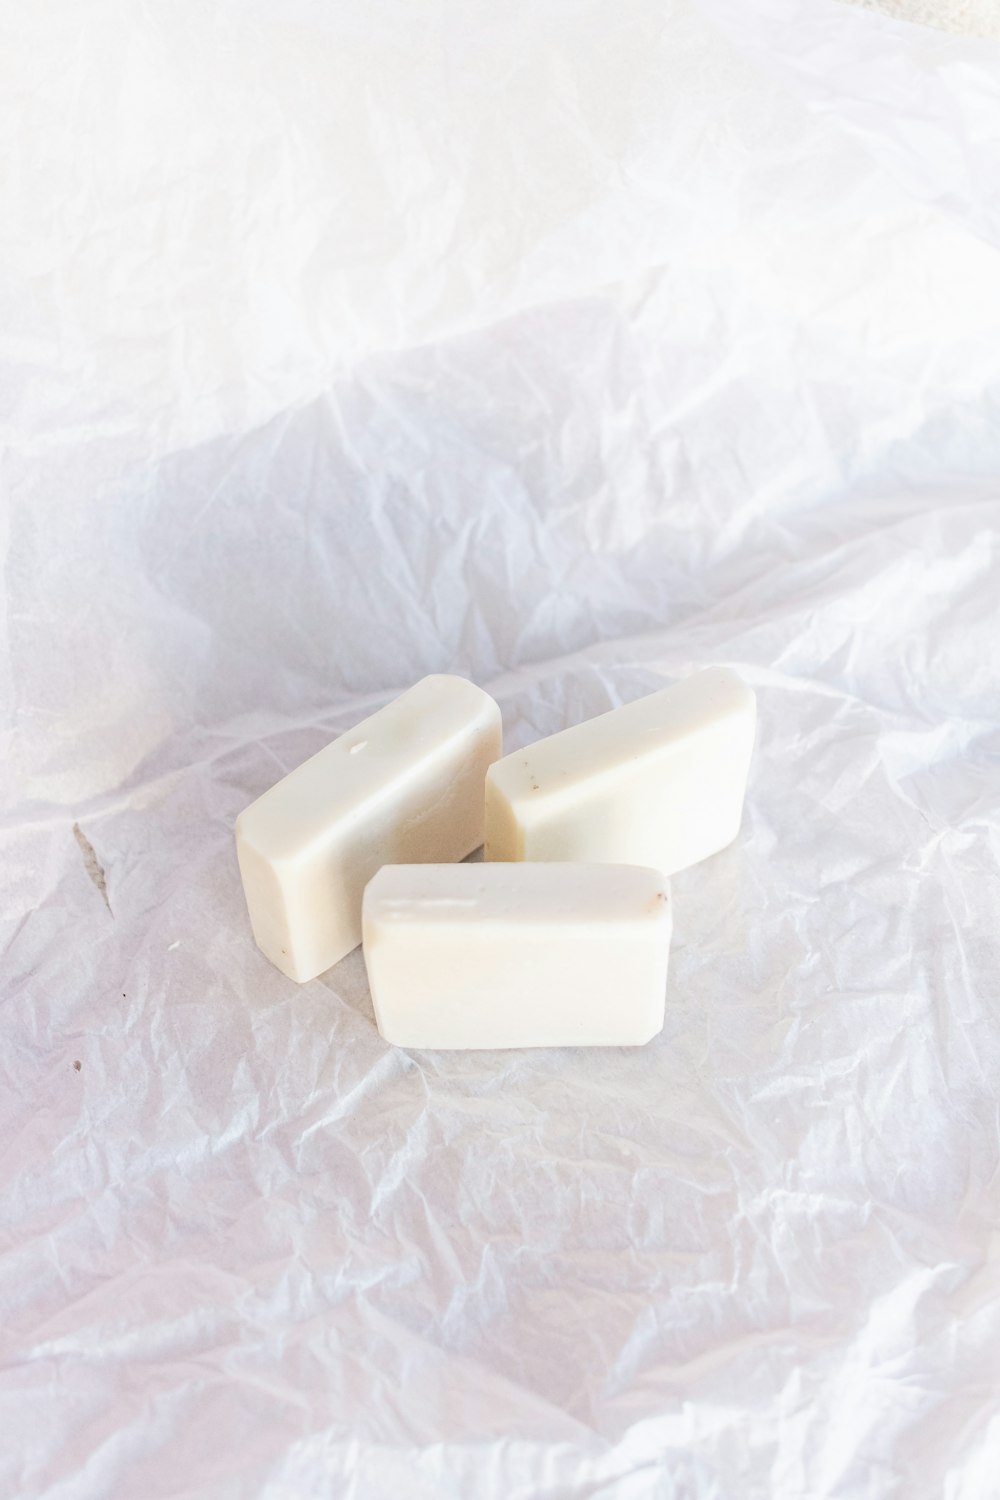 white soap bar on white textile